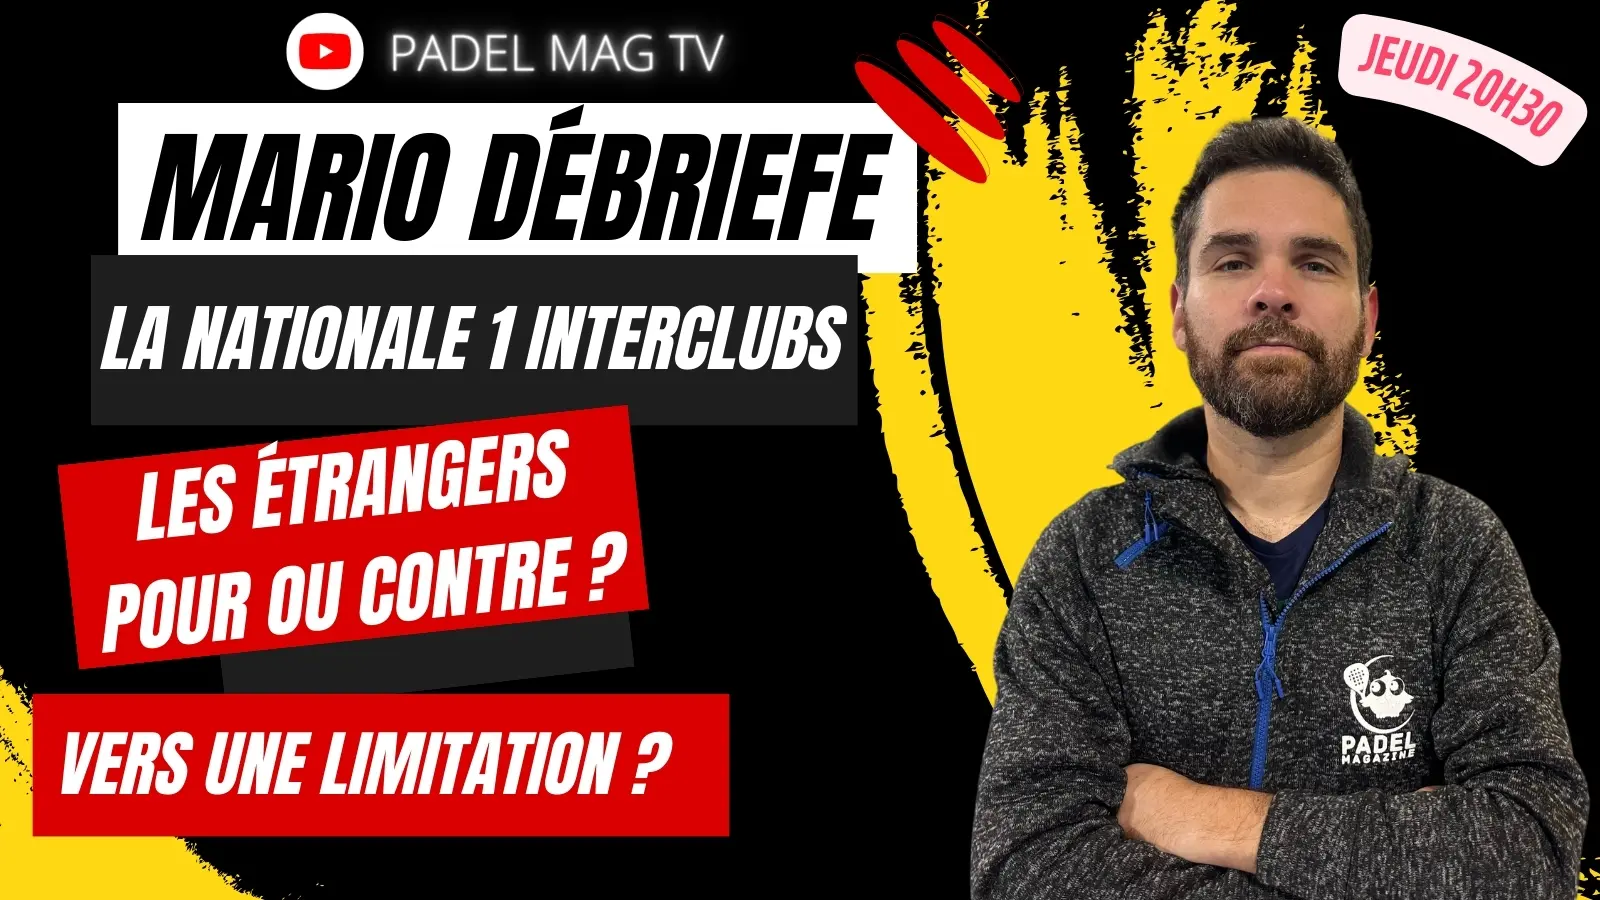 Mario relata a polêmica em torno do Nationale 1 Interclubs